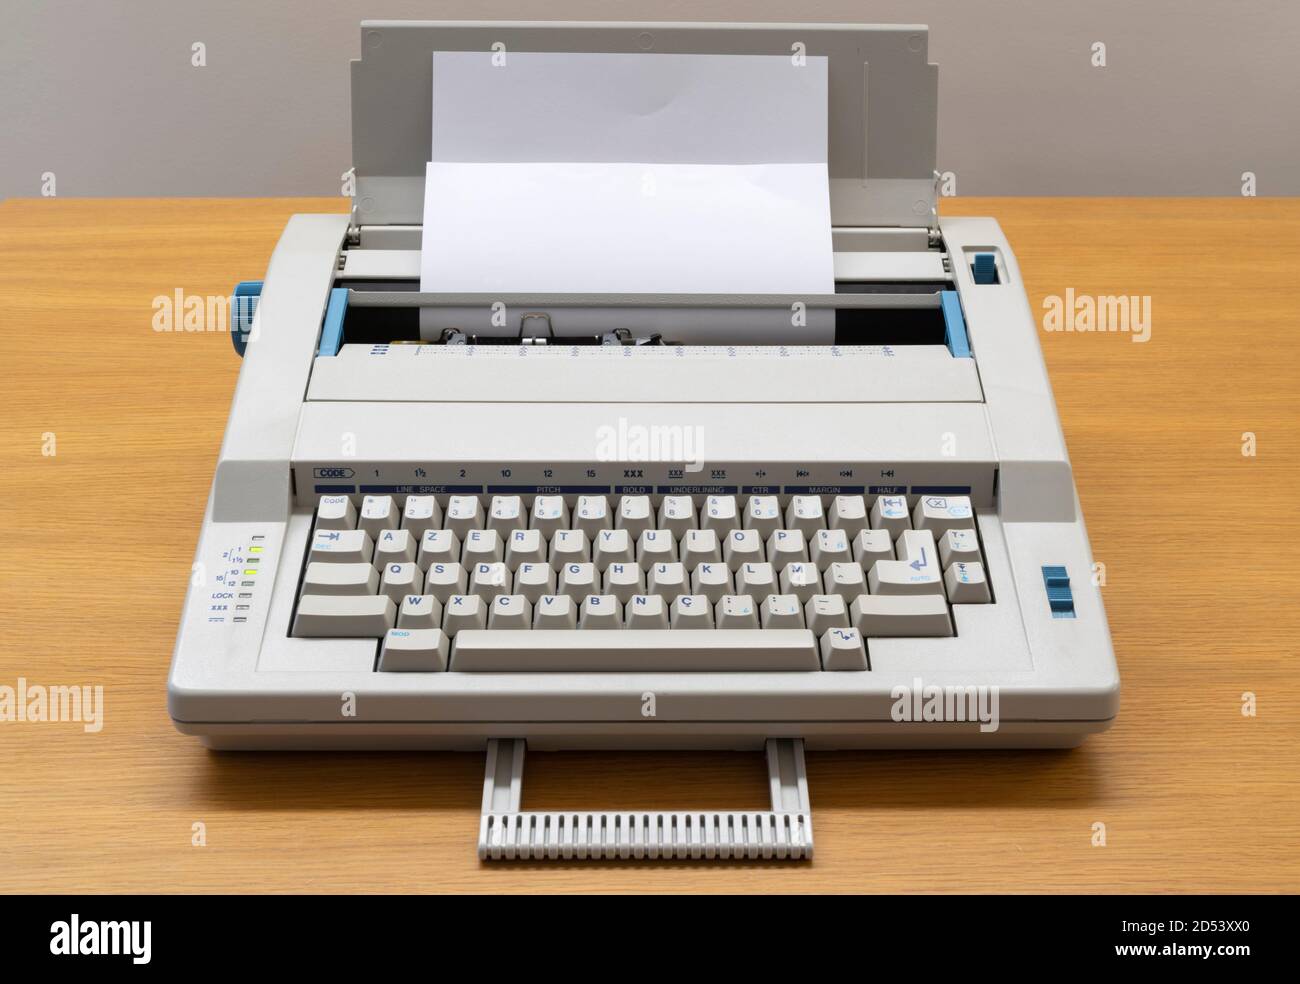 Maquina de escribir electronica fotografías e imágenes de alta resolución -  Alamy